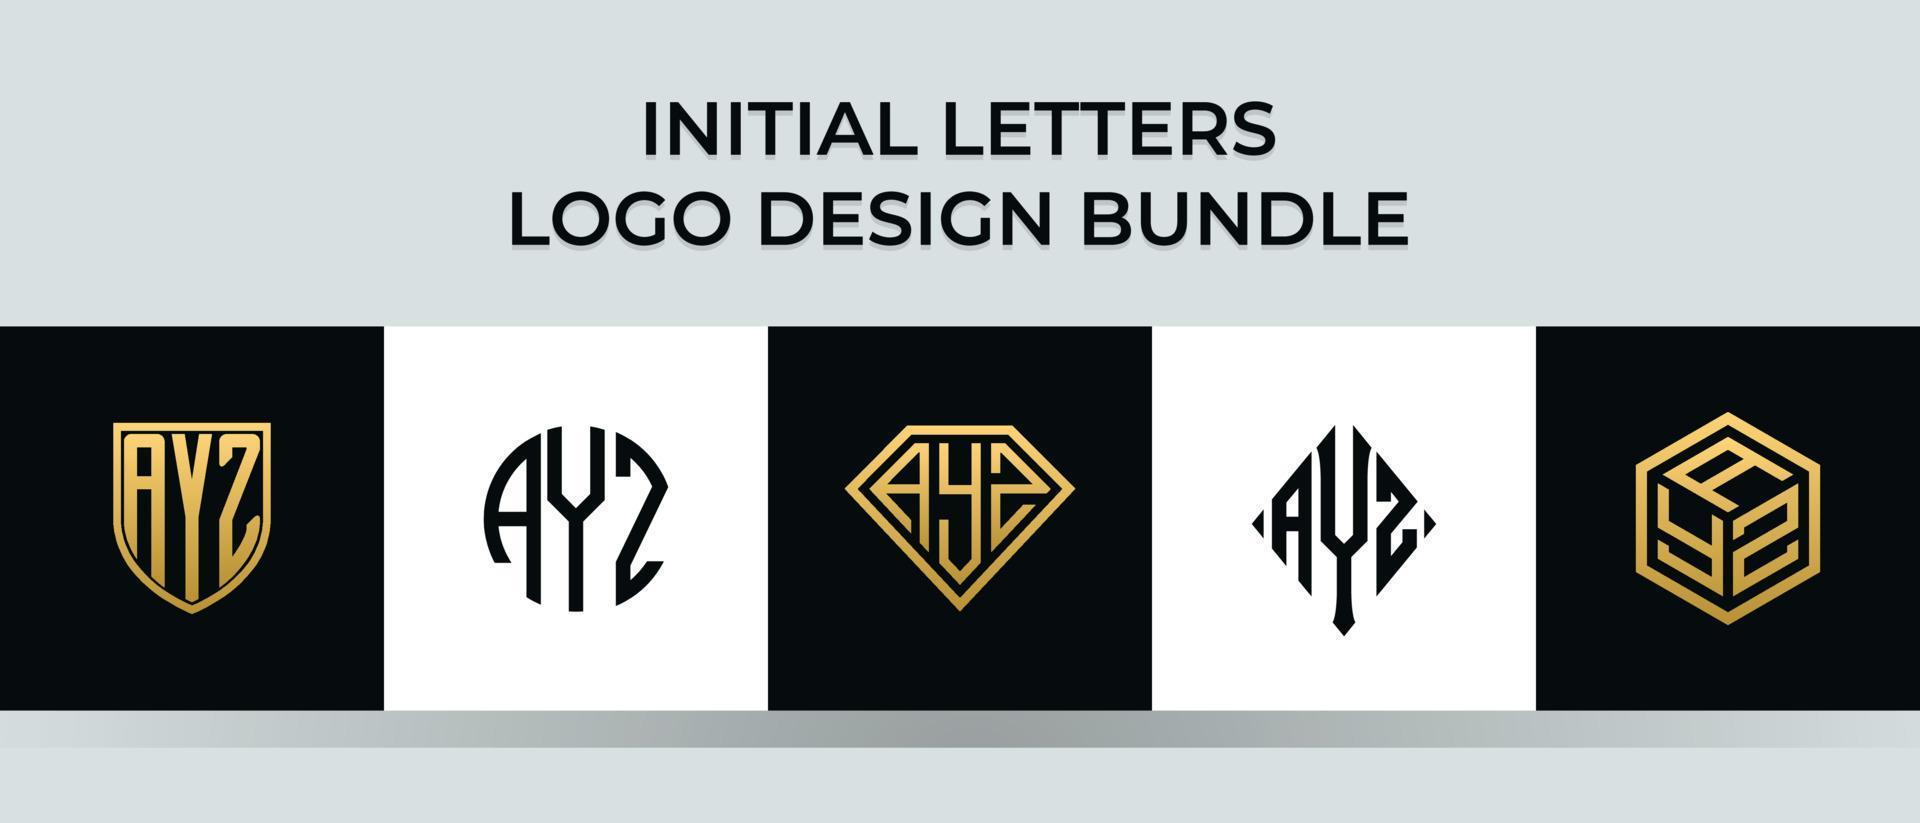 lettere iniziali ayz logo design bundle vettore